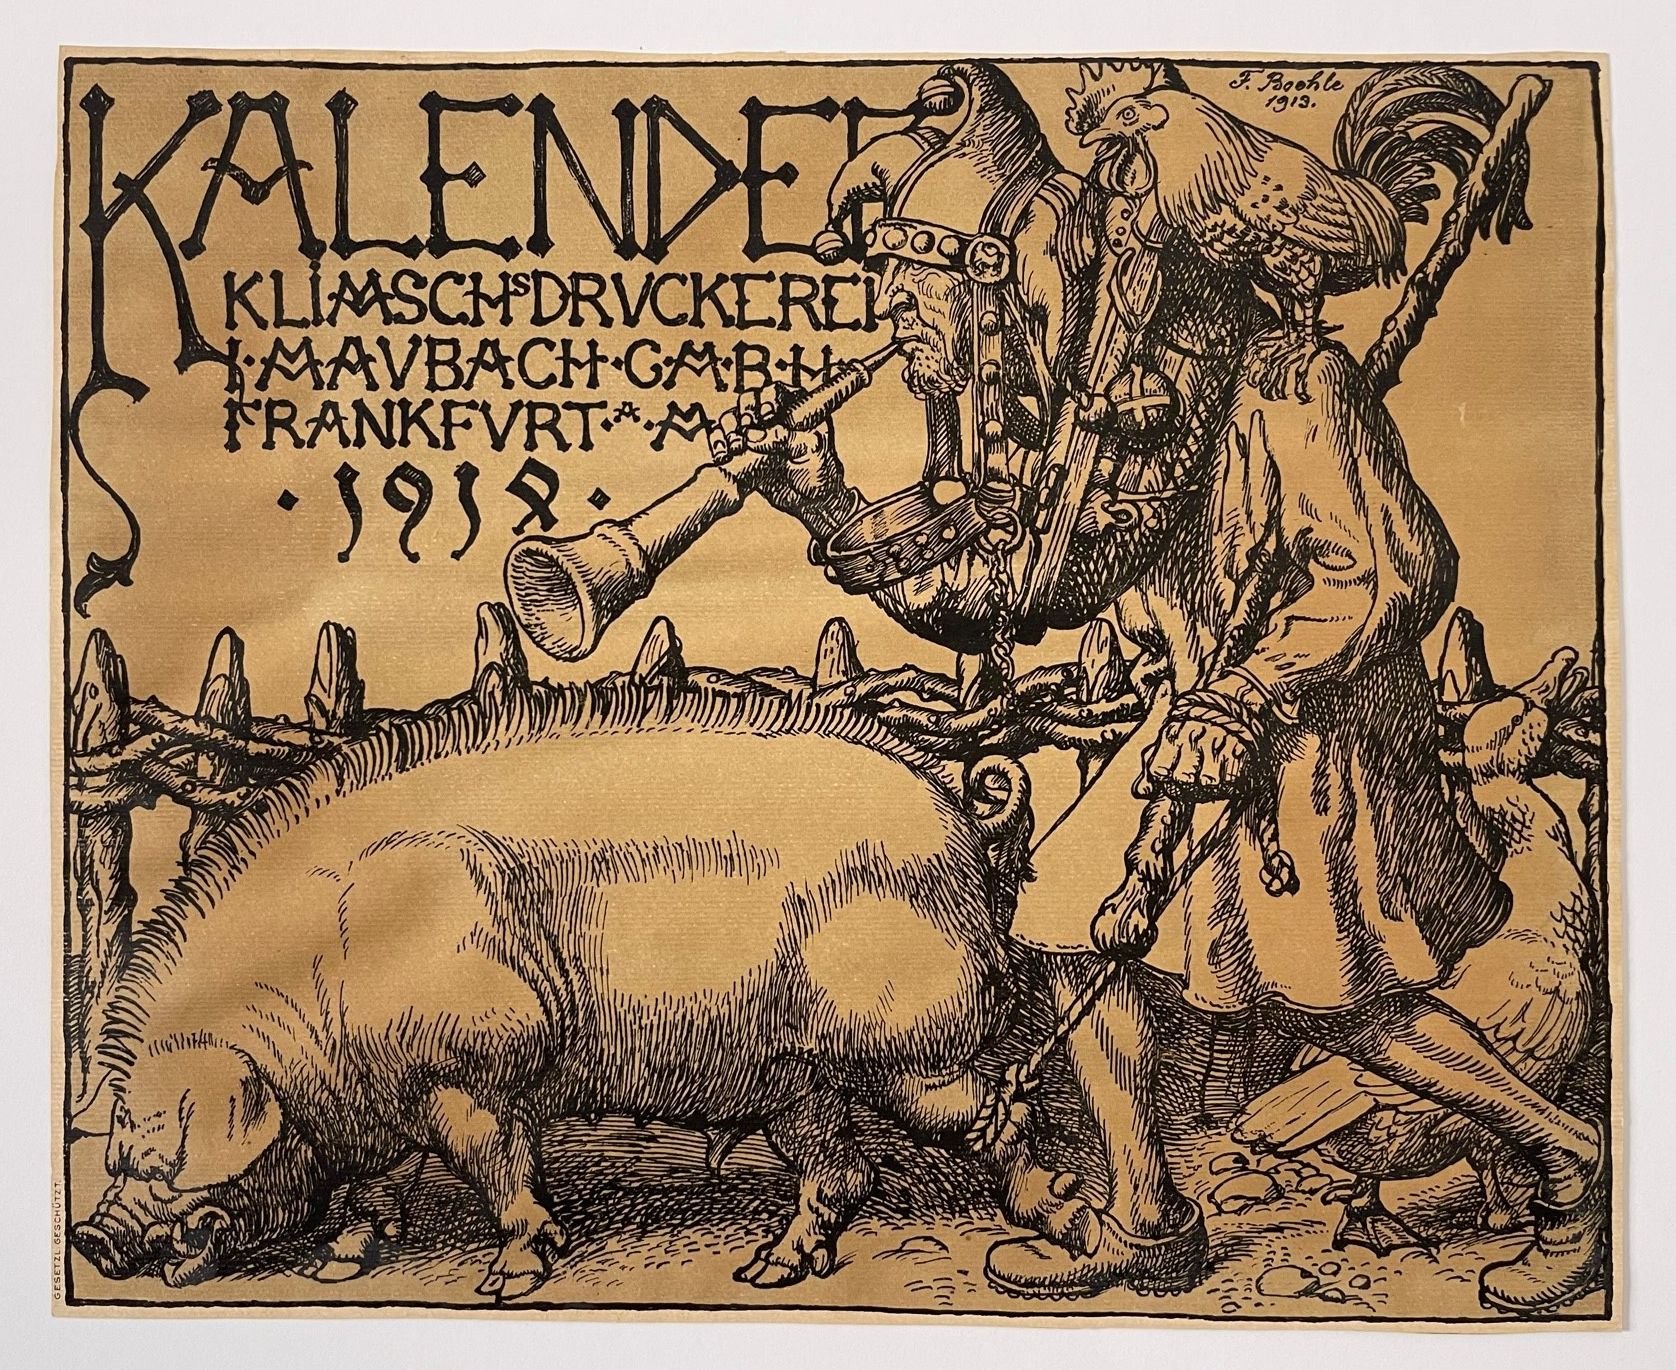 Fritz Boehle, Kalender der Druckerei Klimsch, Frankfurt, 1914 (Taunus-Rhein-Main - Regionalgeschichtliche Sammlung Dr. Stefan Naas CC BY-NC-SA)